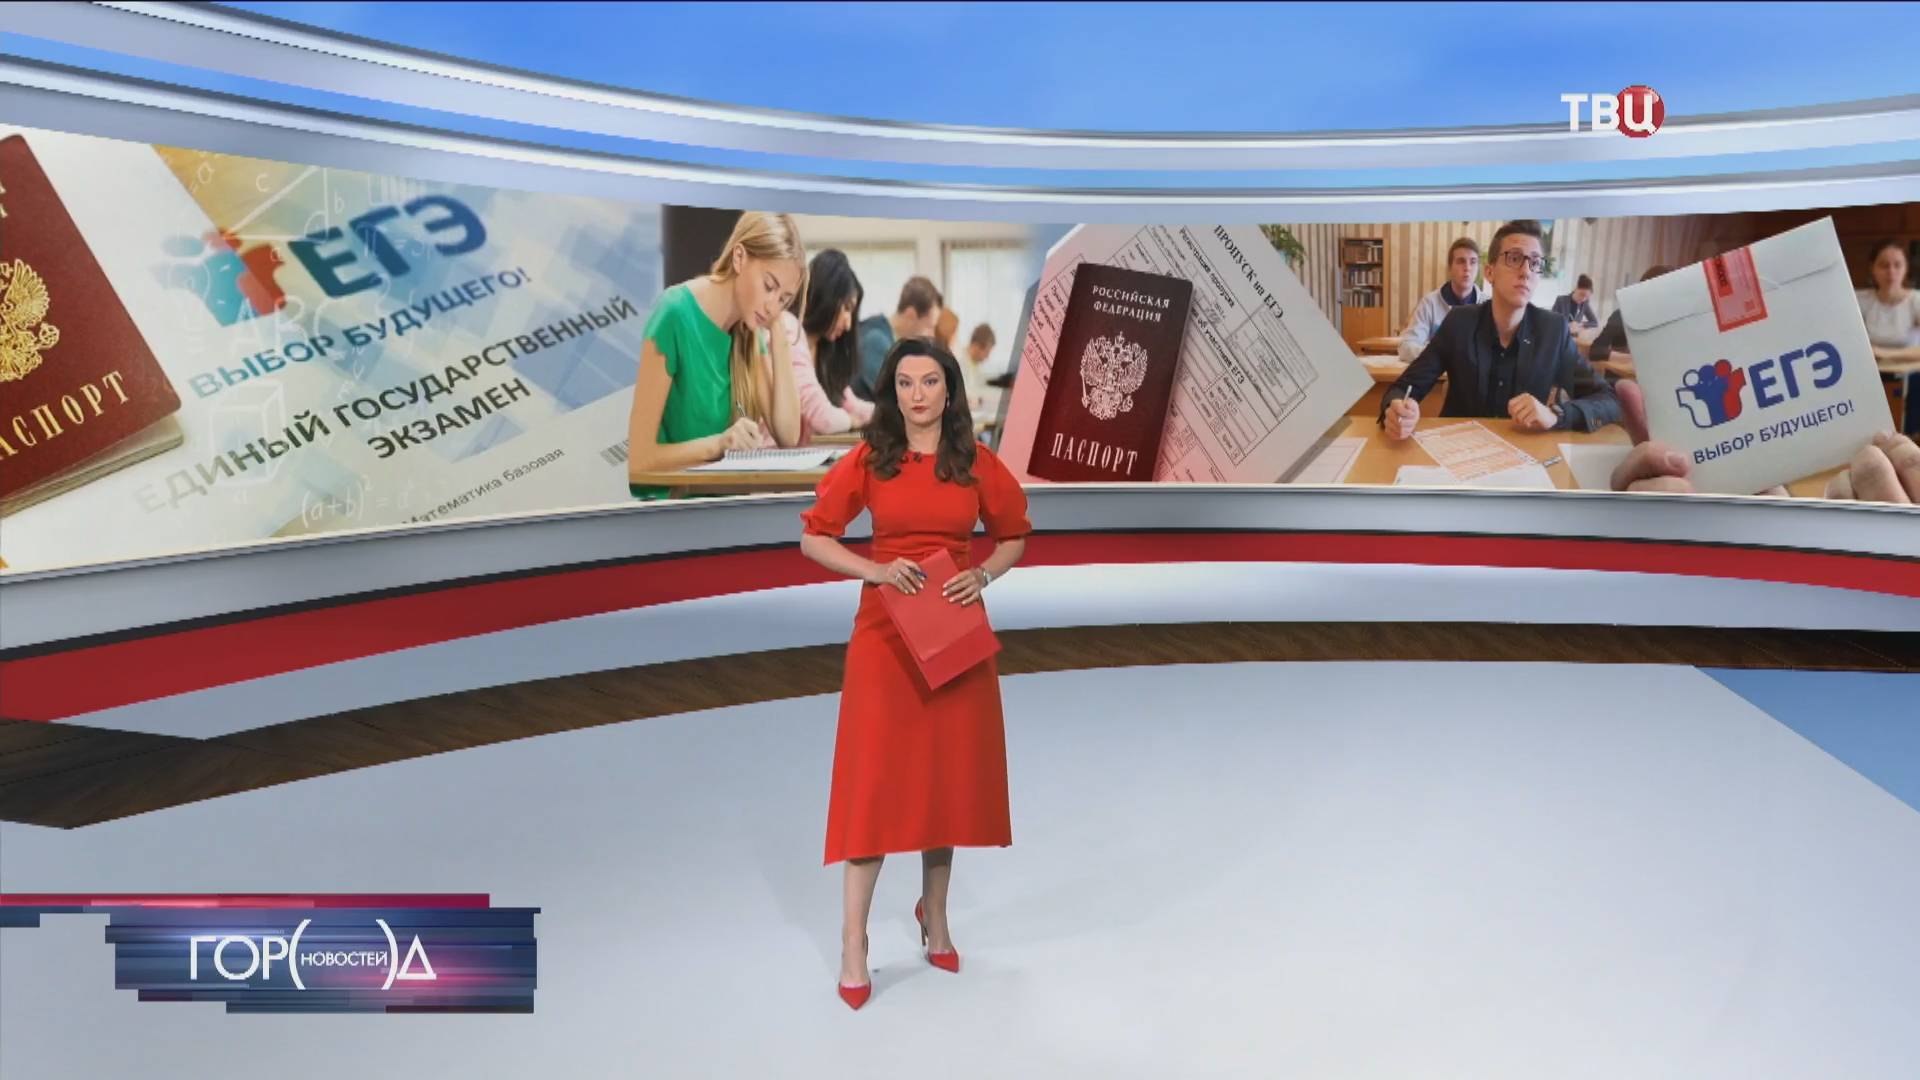 Более 10 тысяч московских выпускников получили возможность пересдать ЕГЭ / Город новостей на ТВЦ